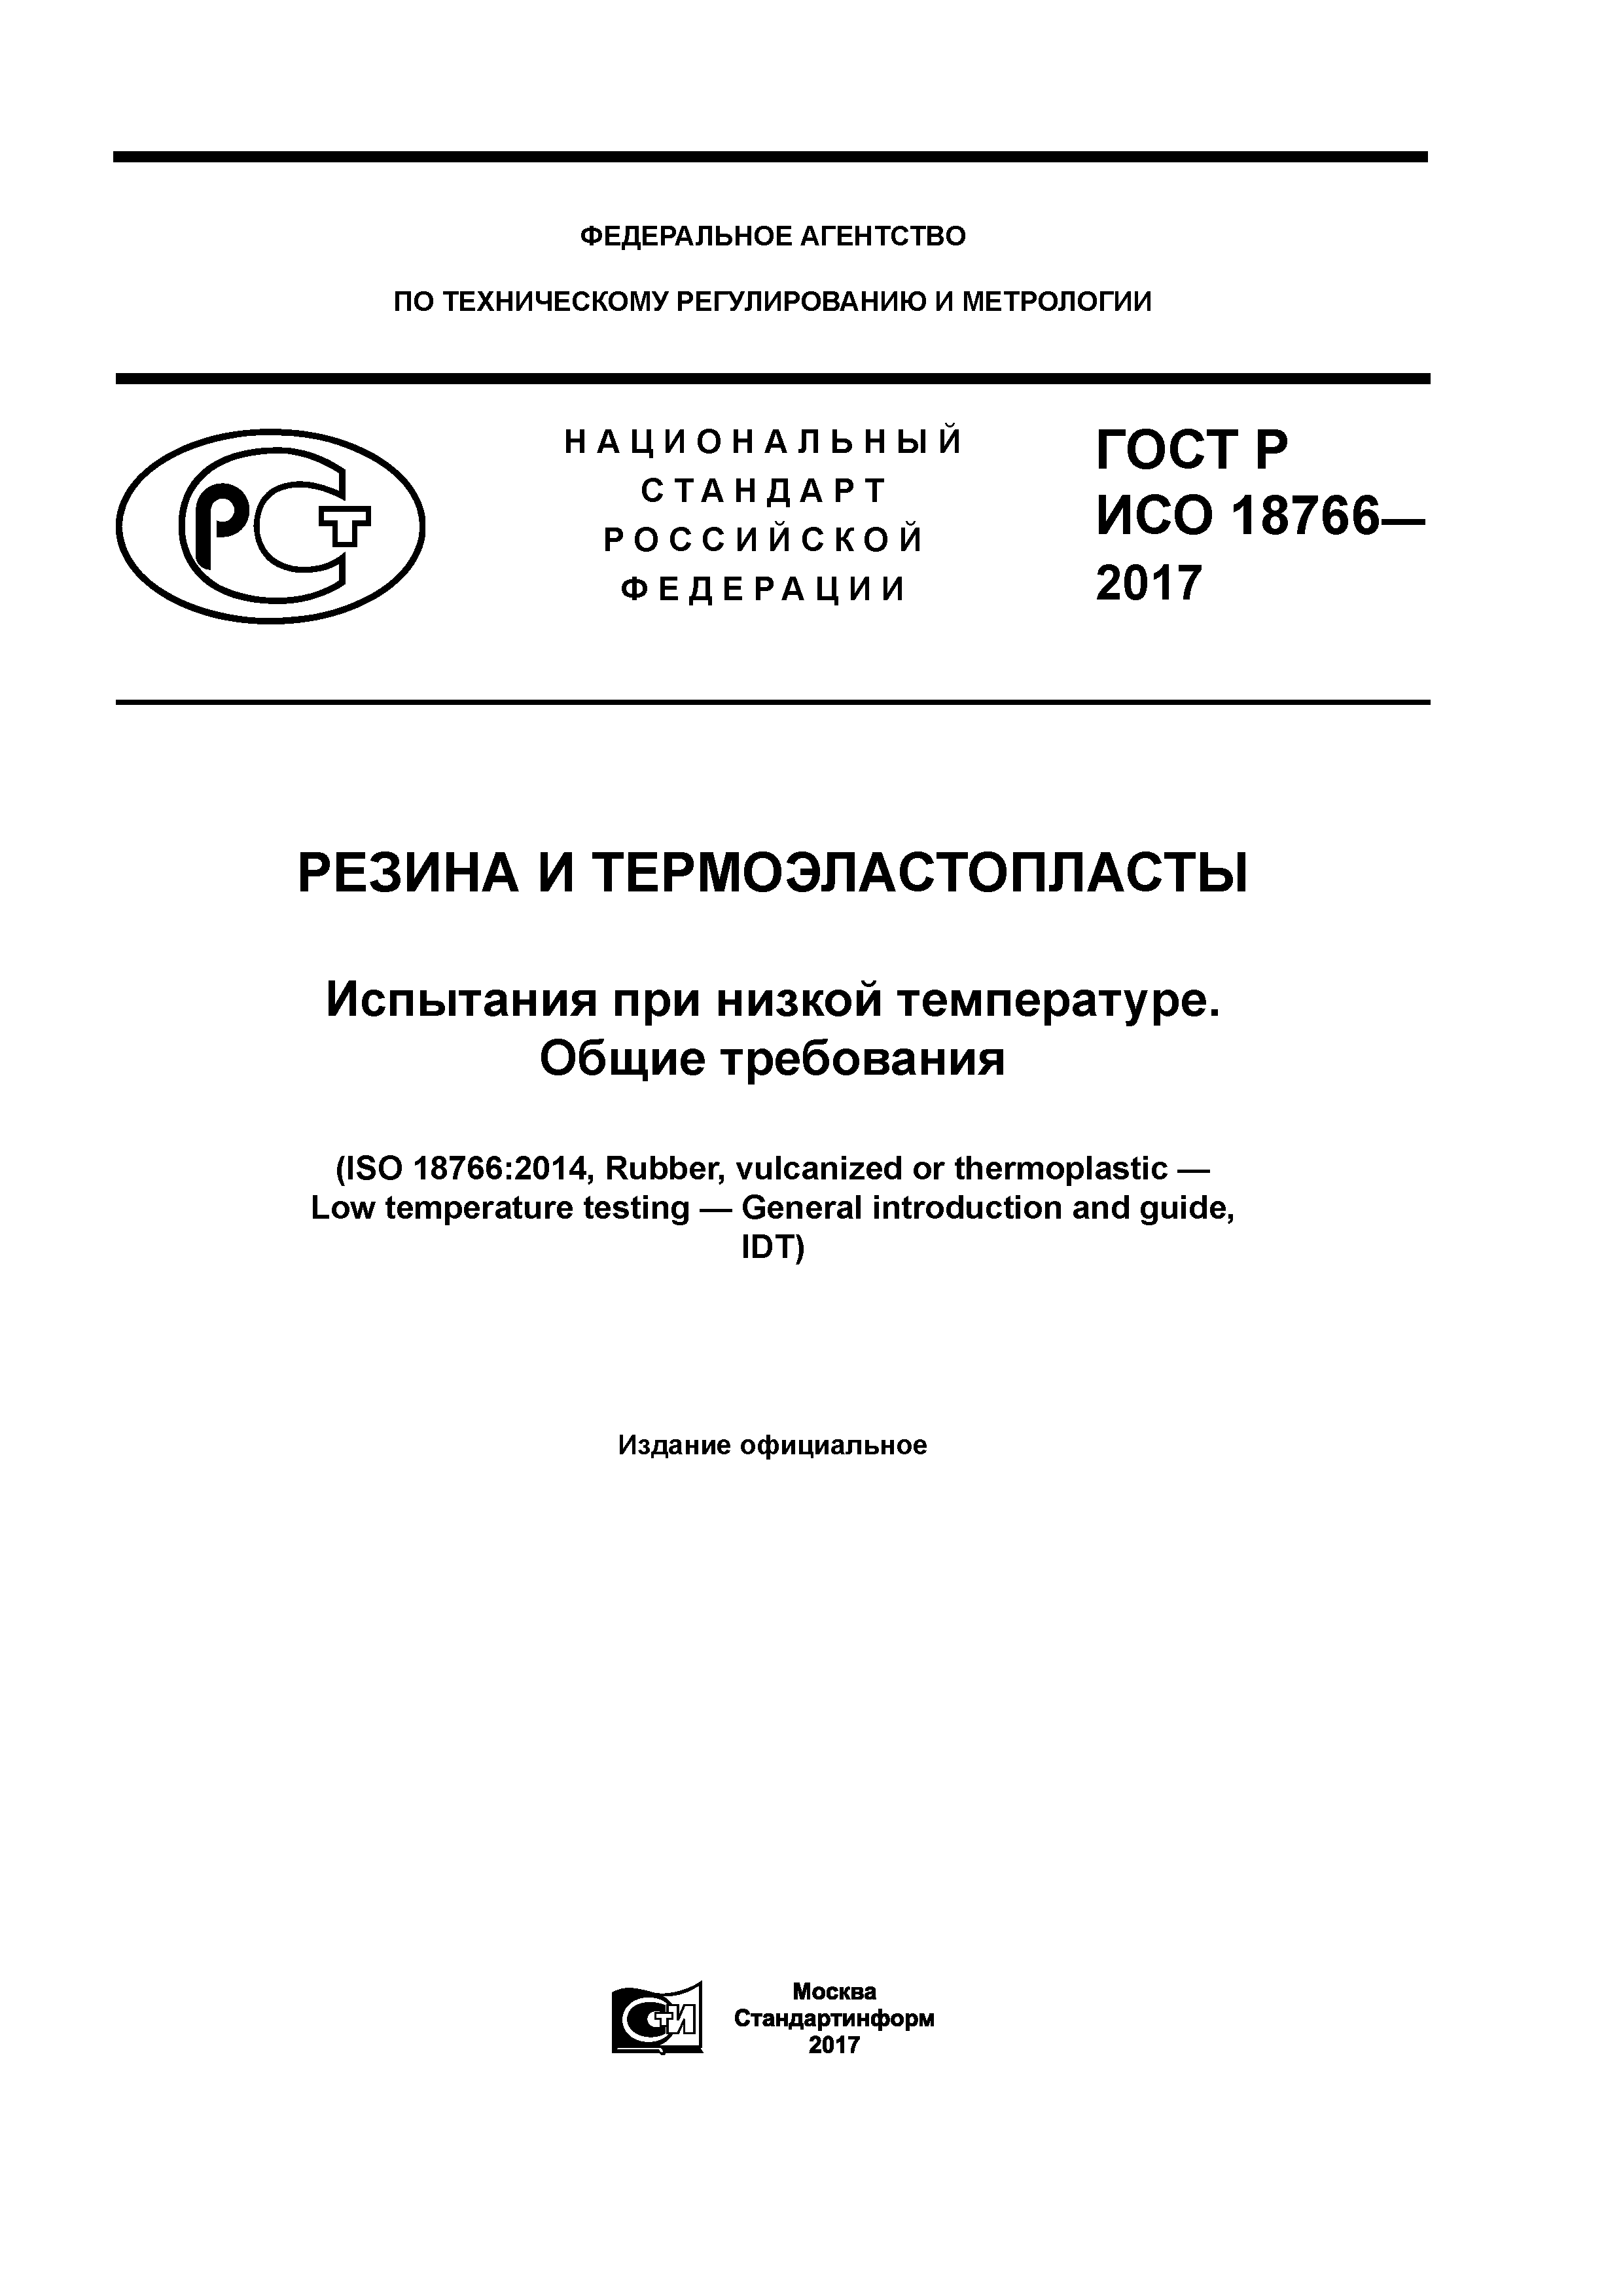 ГОСТ Р ИСО 18766-2017